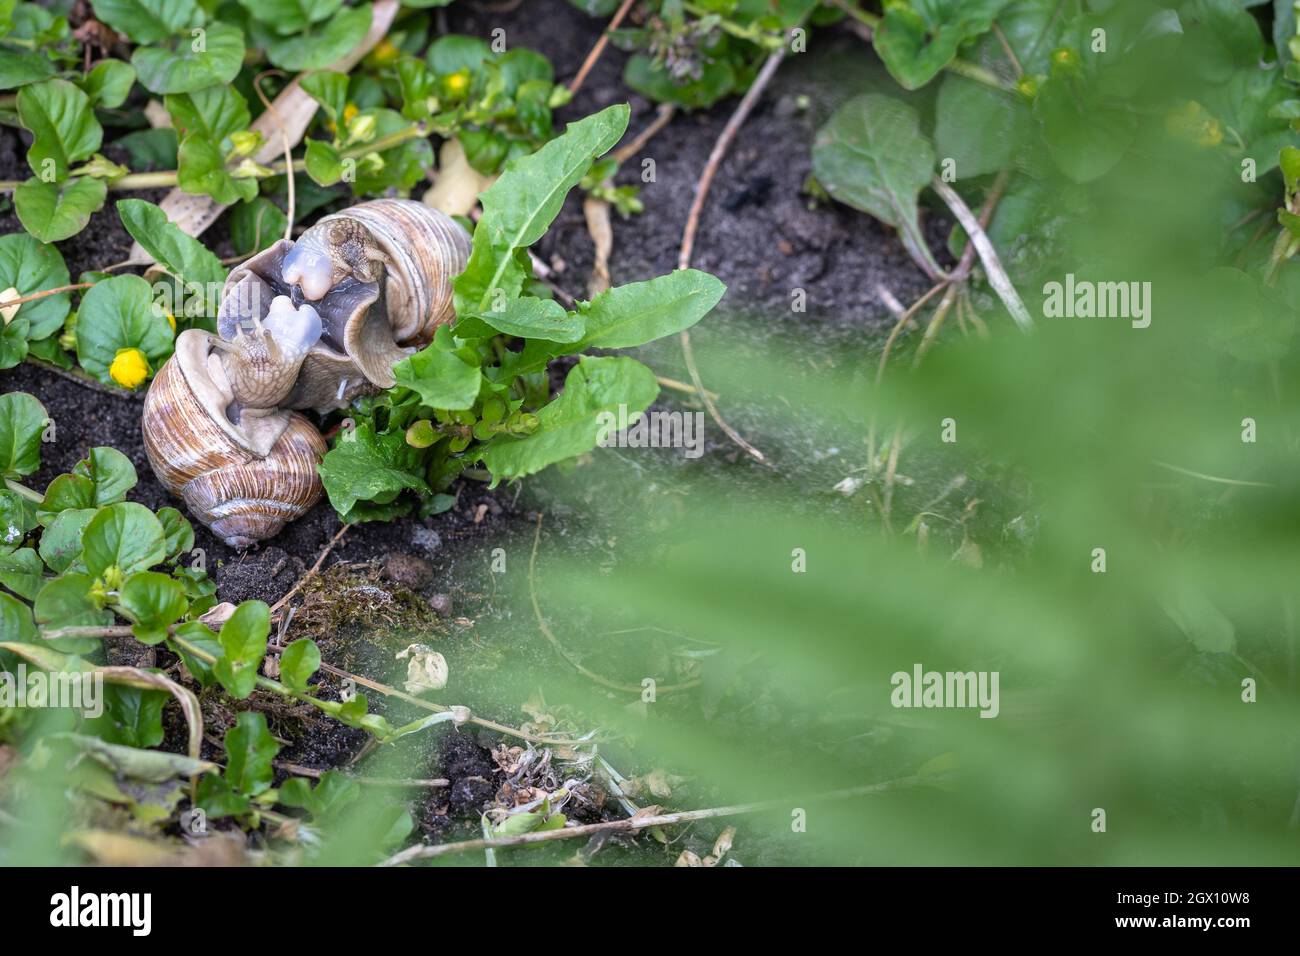 Der Garten ist lebendig: römische Schnecken - Helix pomatia - paaren sich im Garten Stockfoto